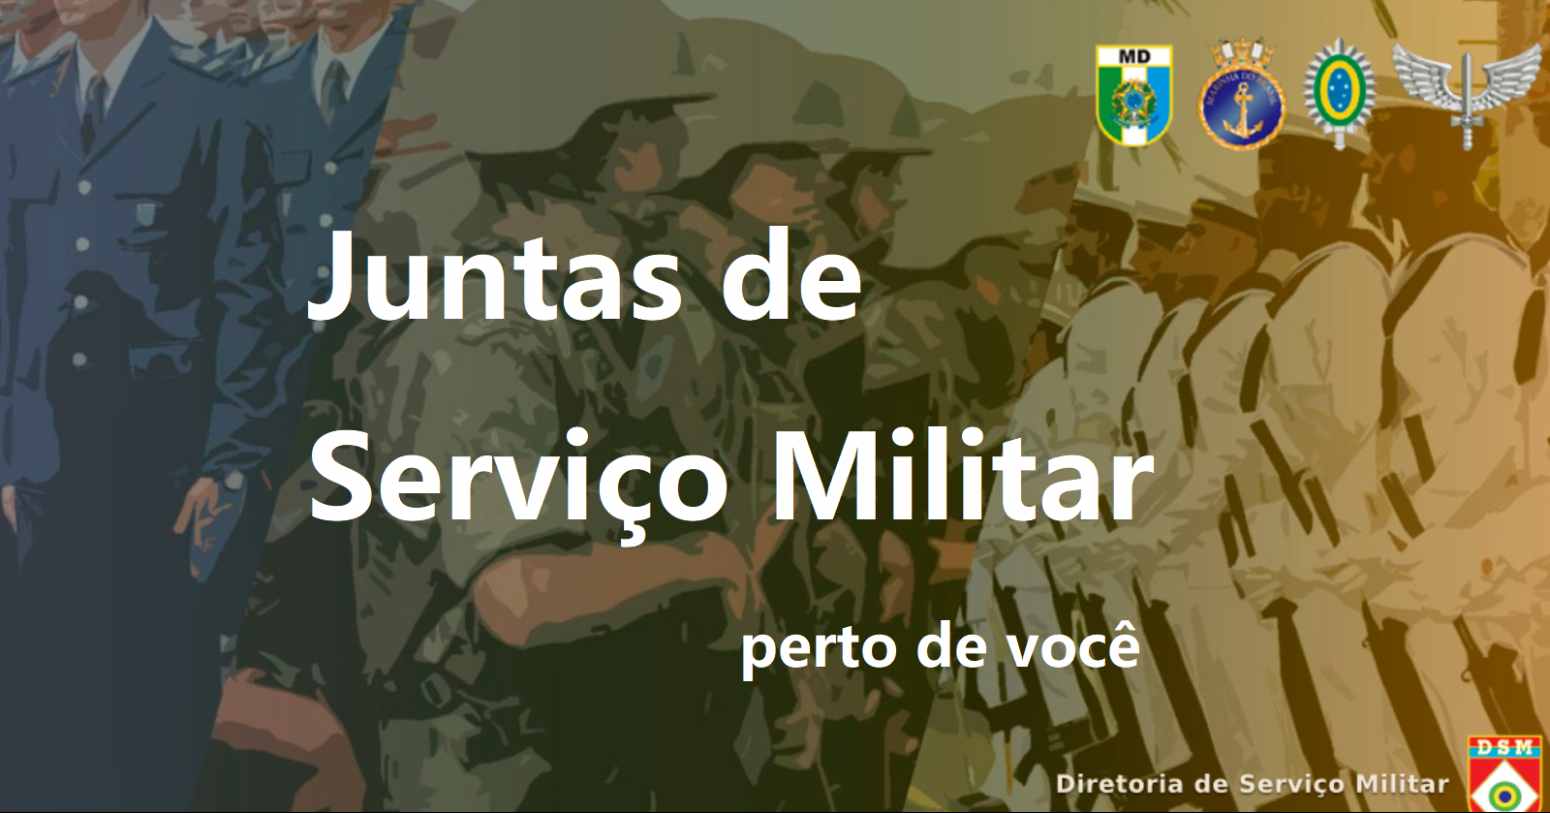 JSM AL – lista completa das Juntas de Serviço Militar em Alagoas